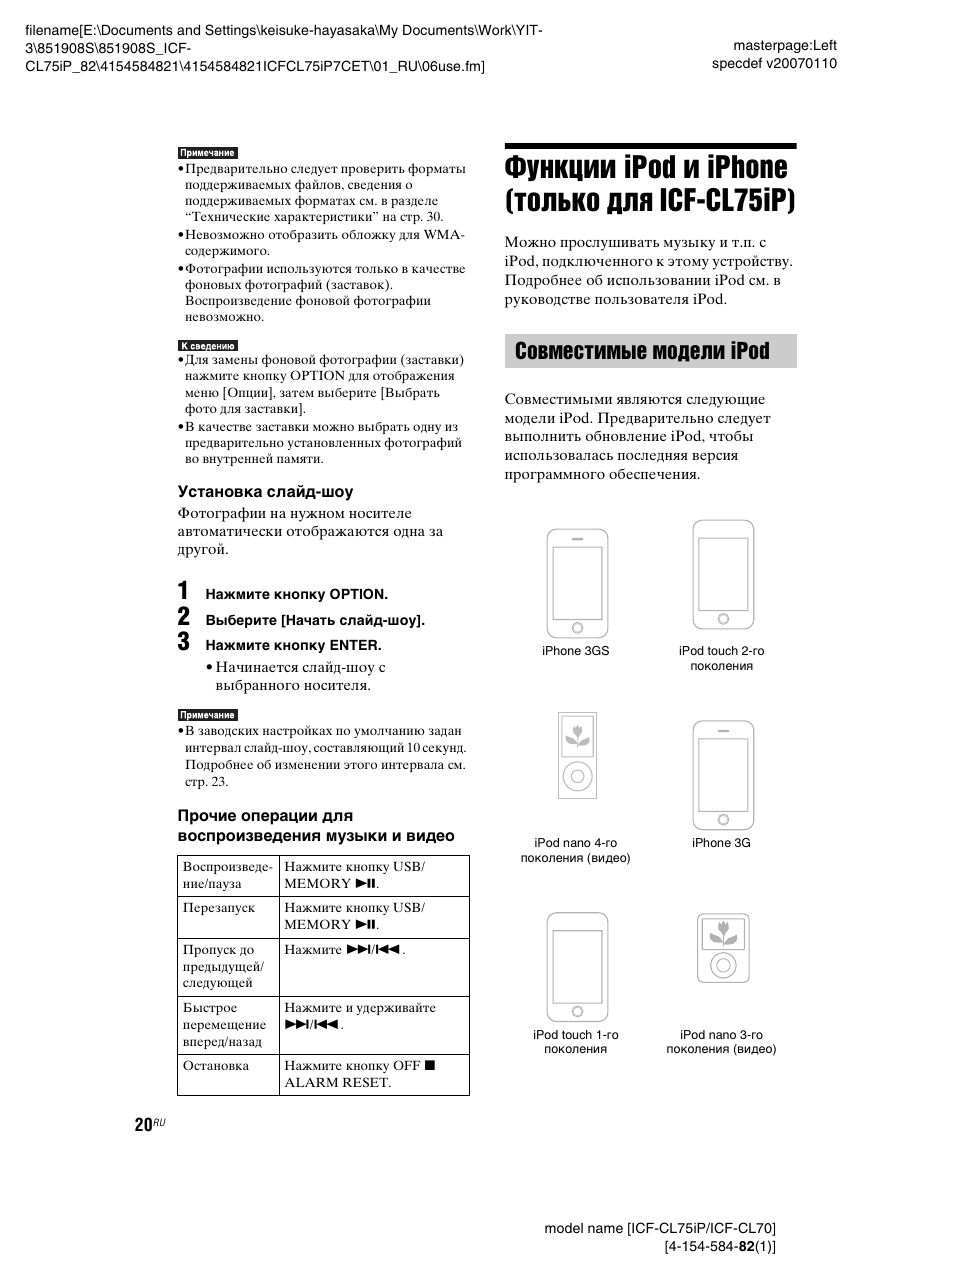 Функции ipod и iphone (только для icf-cl75ip), Совместимые модели ipod, Функции ipod и iphone (только | Для icf-cl75ip), Ip) (20) | Инструкция по эксплуатации Sony ICF-CL70 | Страница 20 / 64